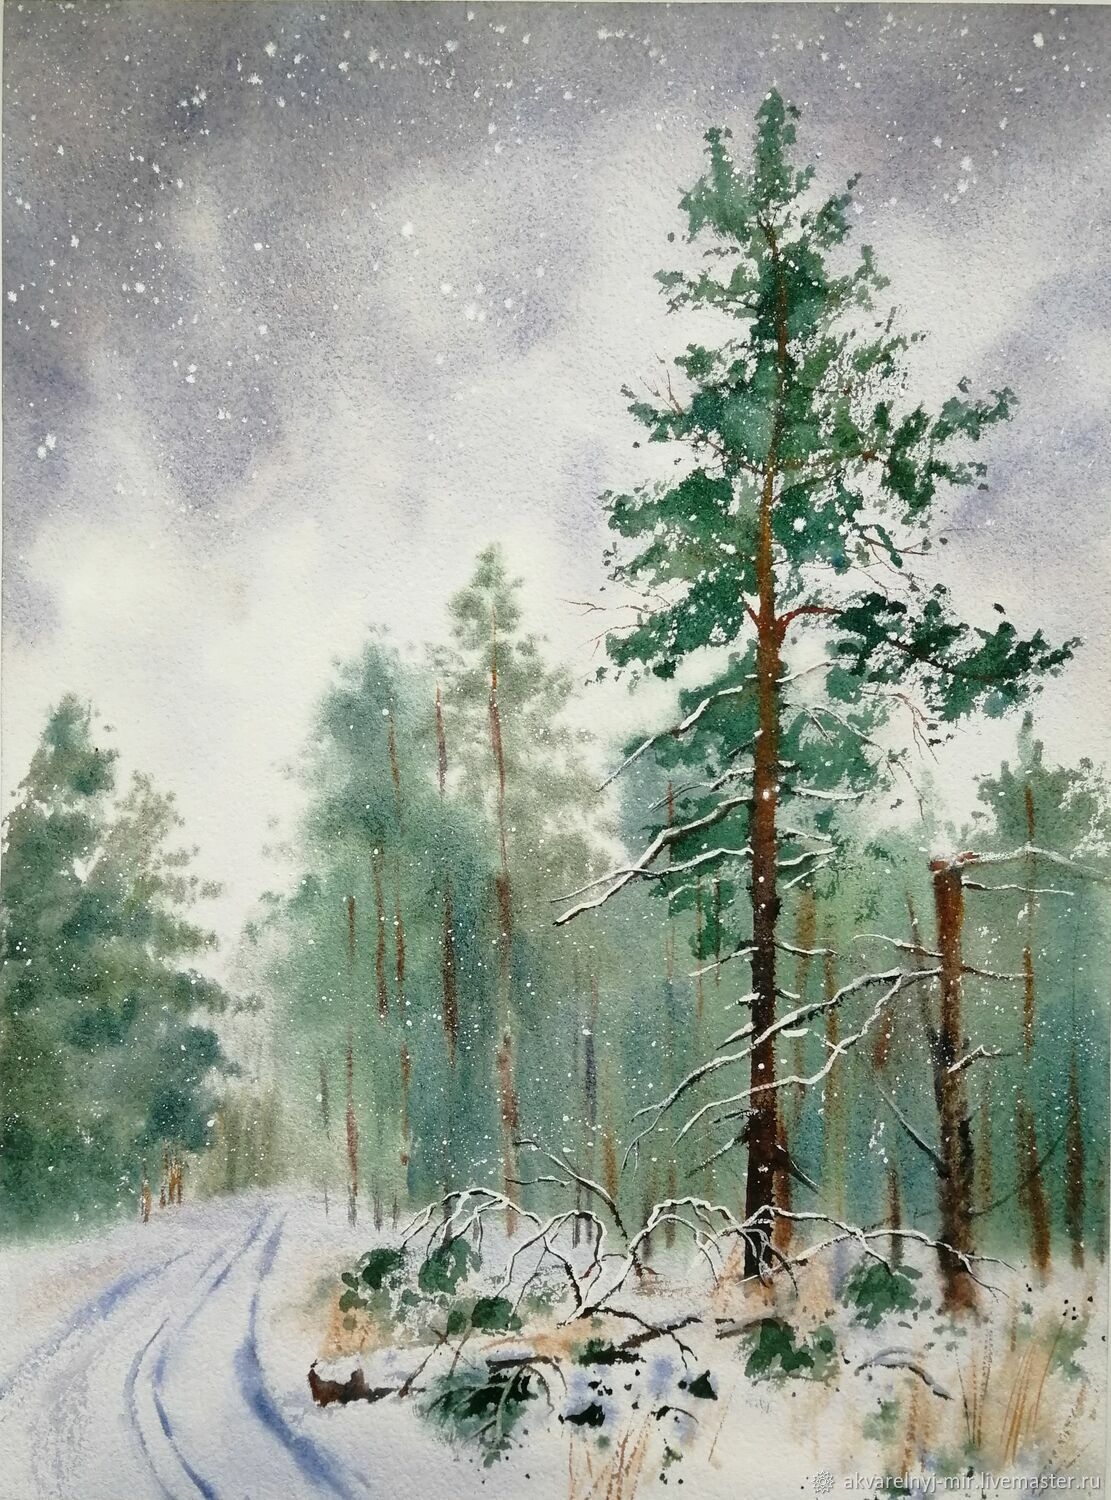  Зимний сосновый лес, Картины, Владивосток,  Фото №1